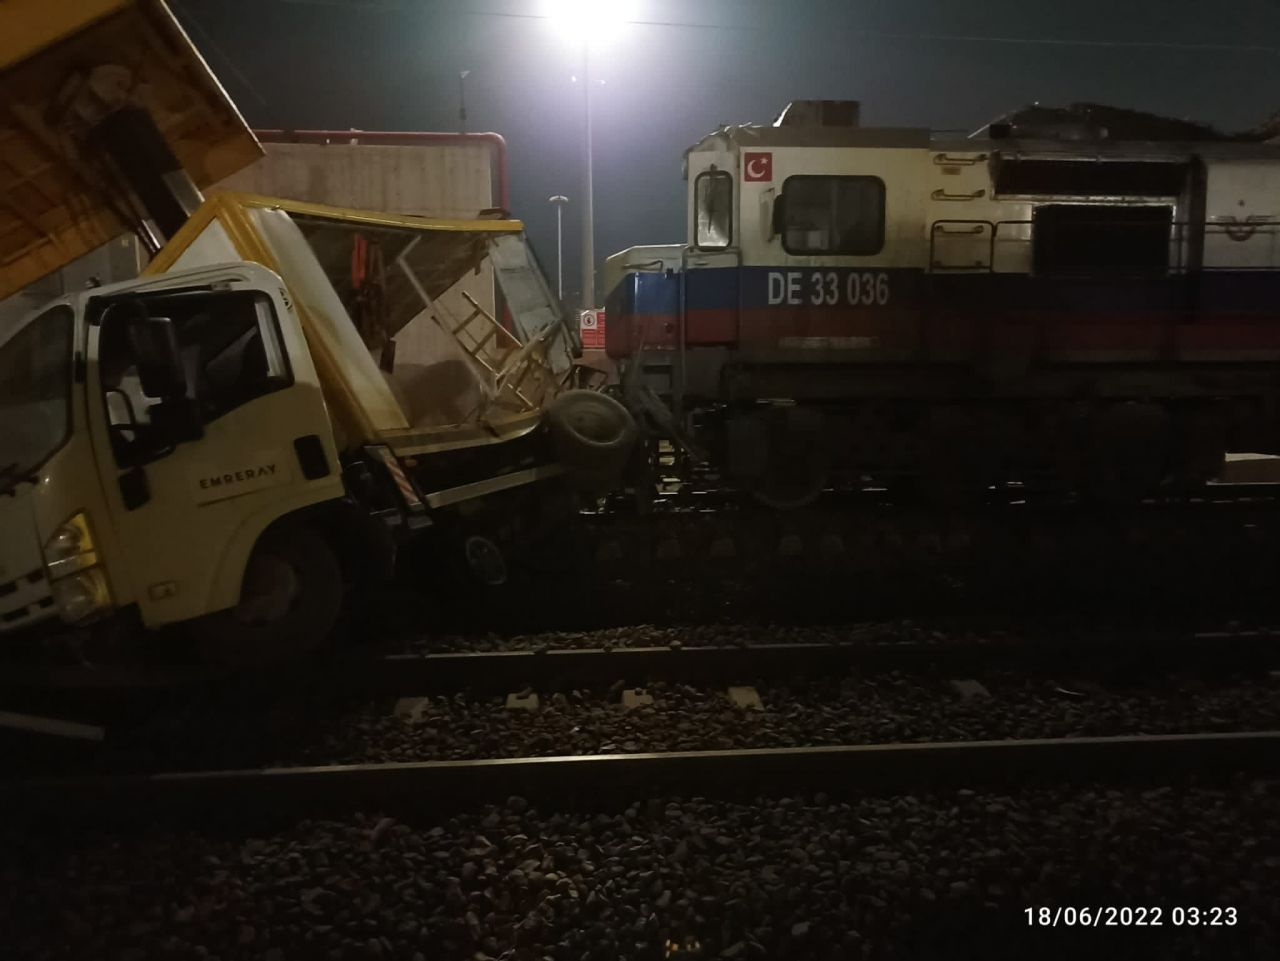 Demiryoluna elektrik hattı döşeyen işçilerin feci ölümü! Lokomotif çarptı